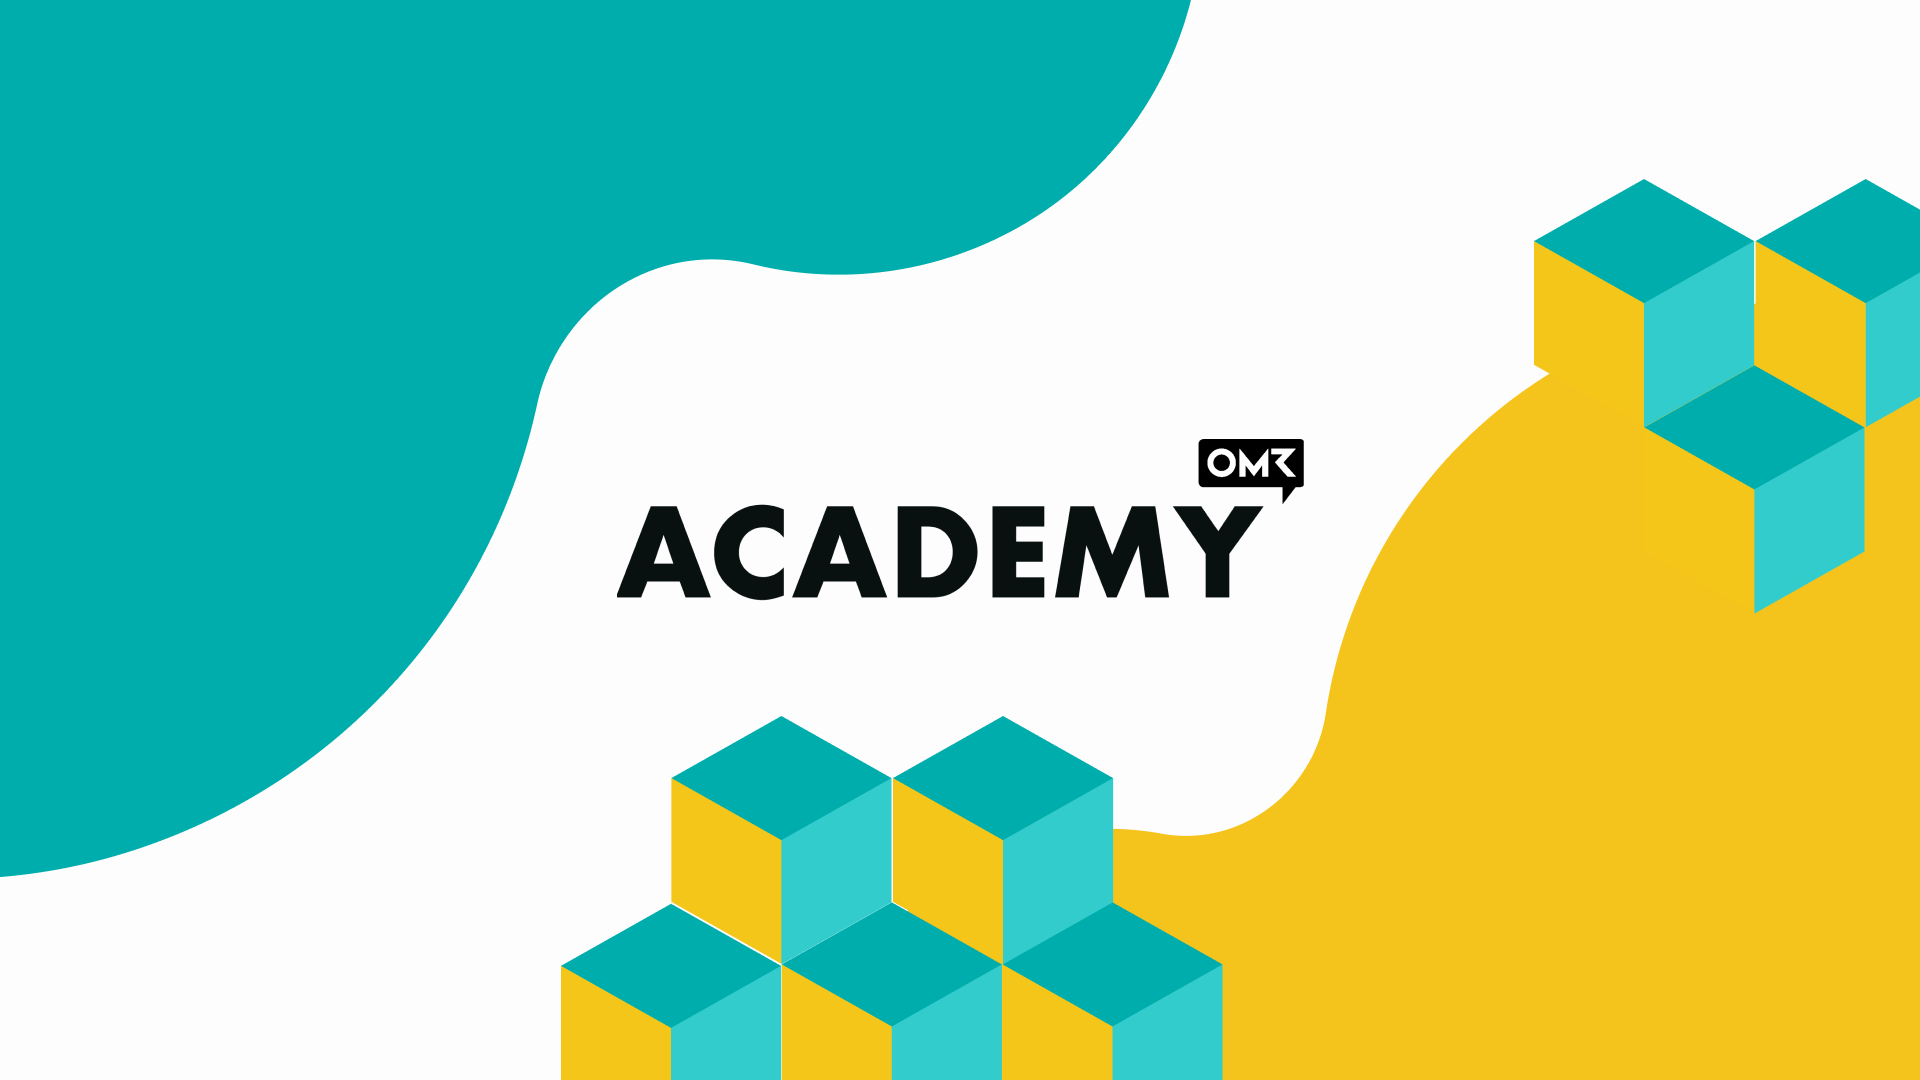 OMR Academy | Digital Marketing Strategy